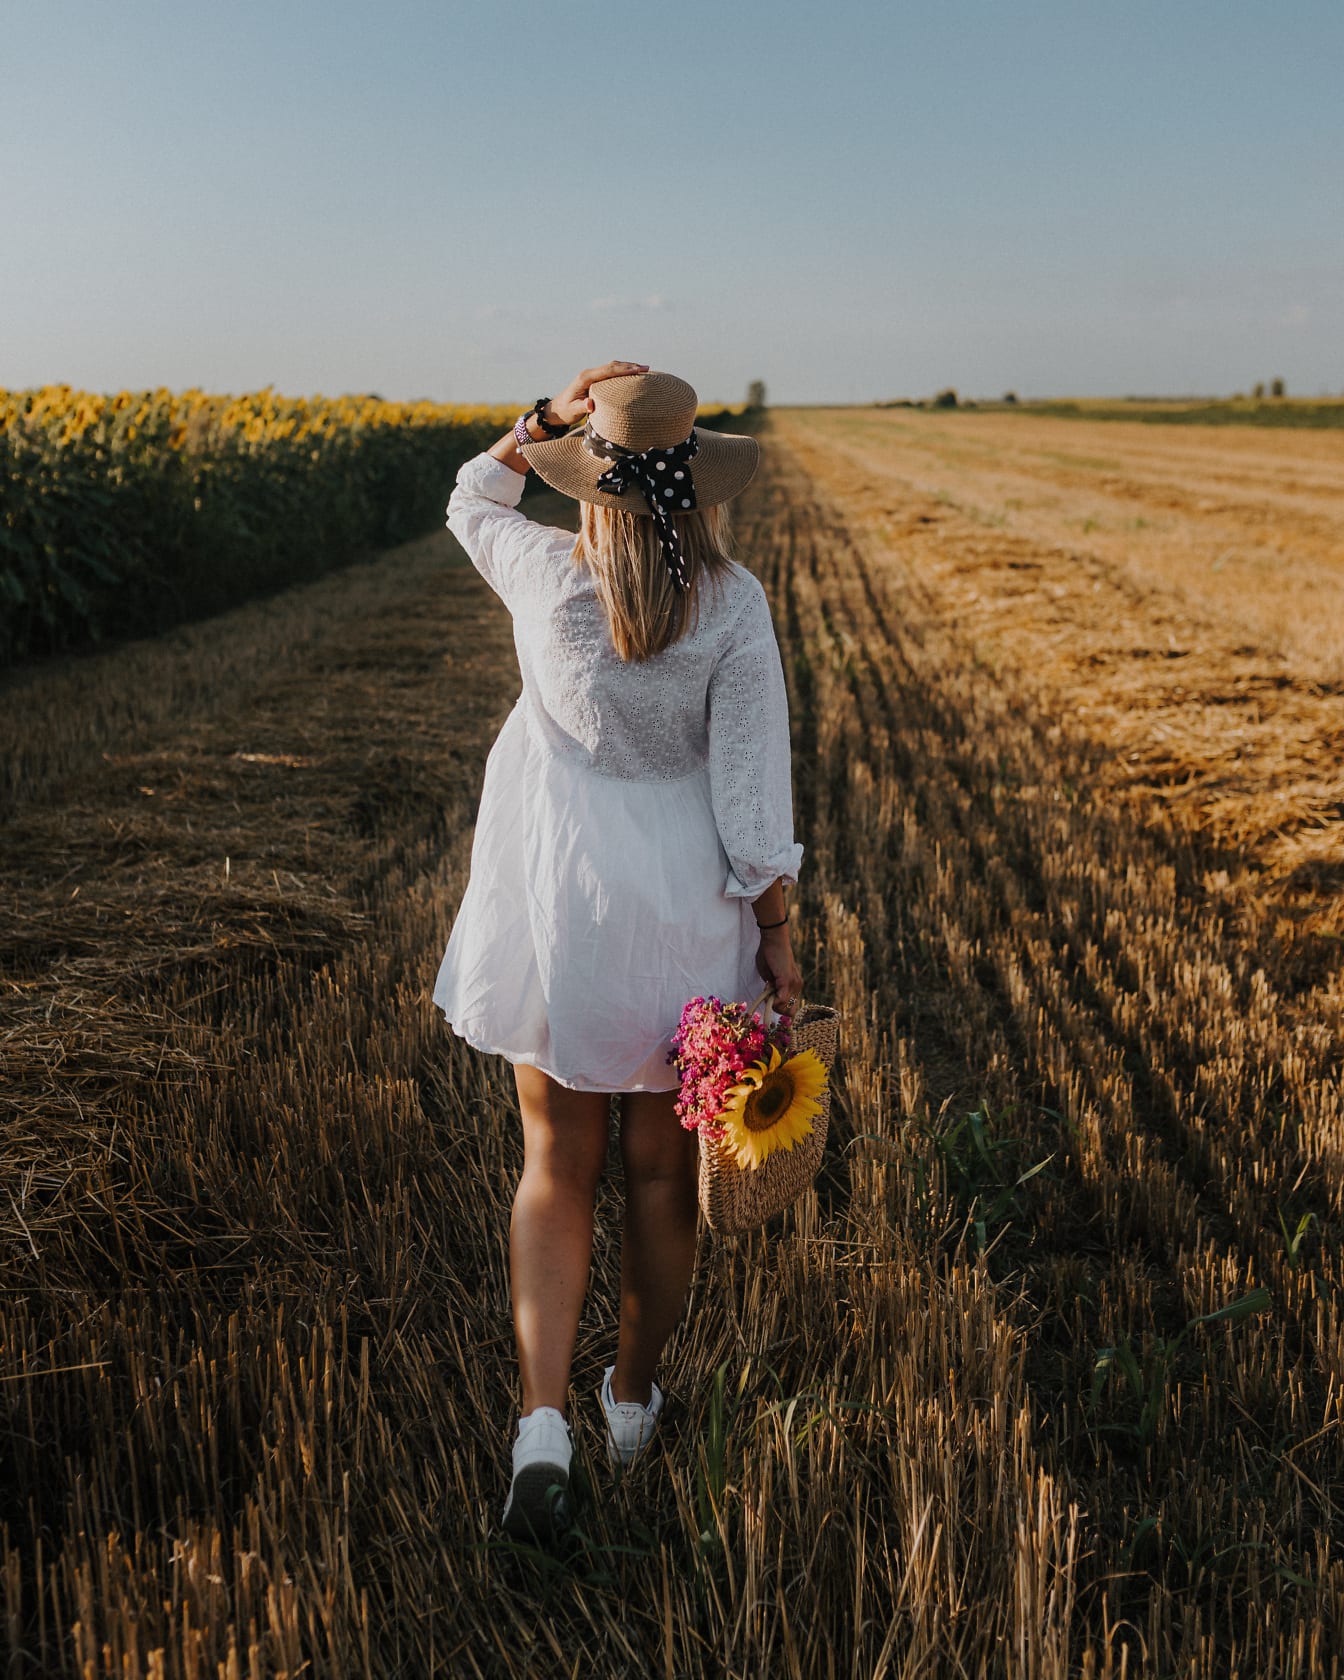 年轻女子穿着白色连衣裙和草帽走在麦田里